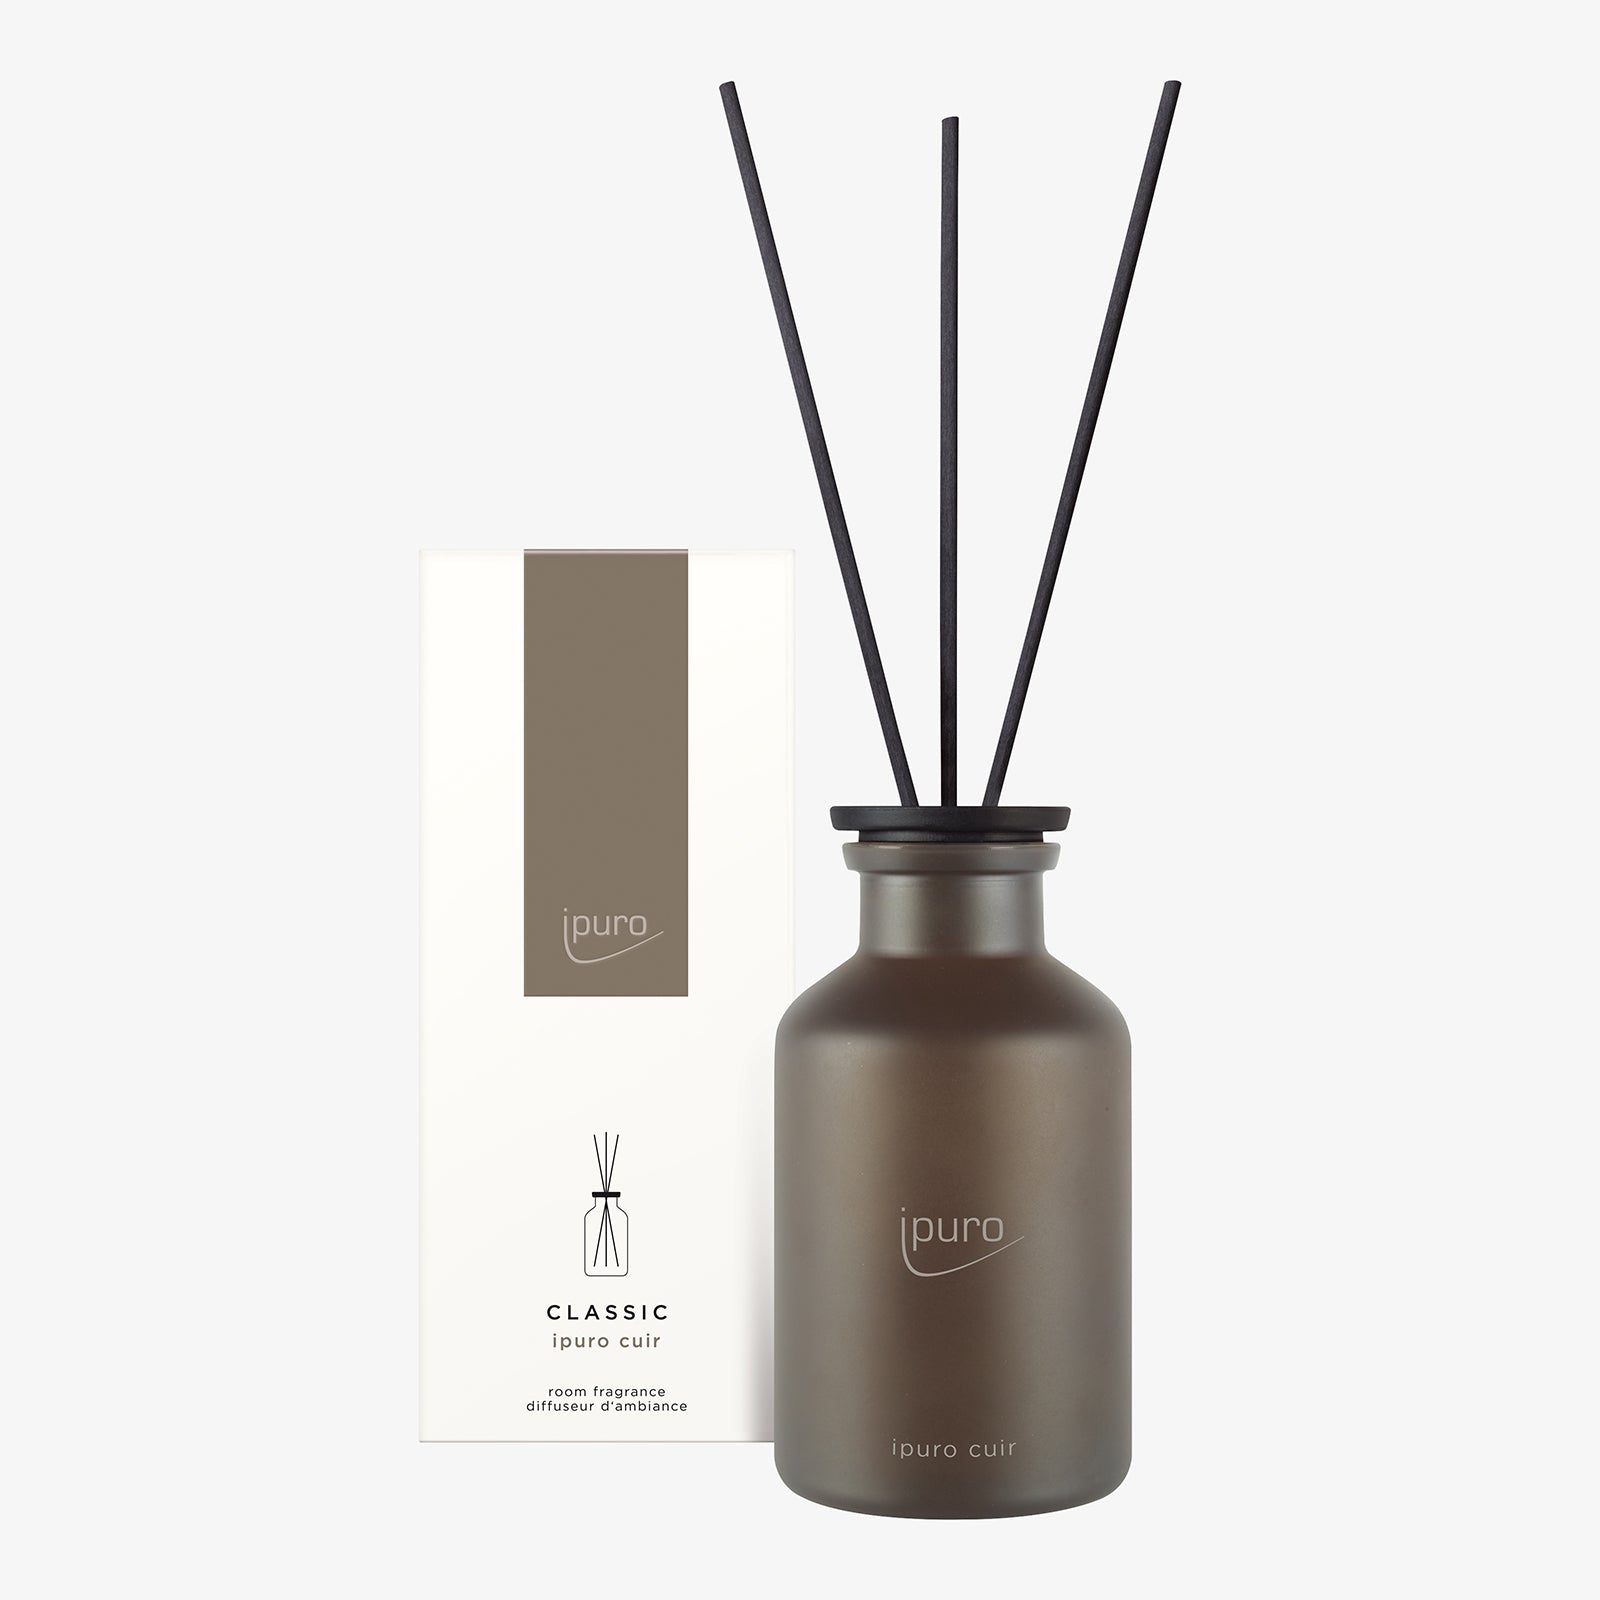 CLASSIC ipuro cuir room fragrance – IPURO